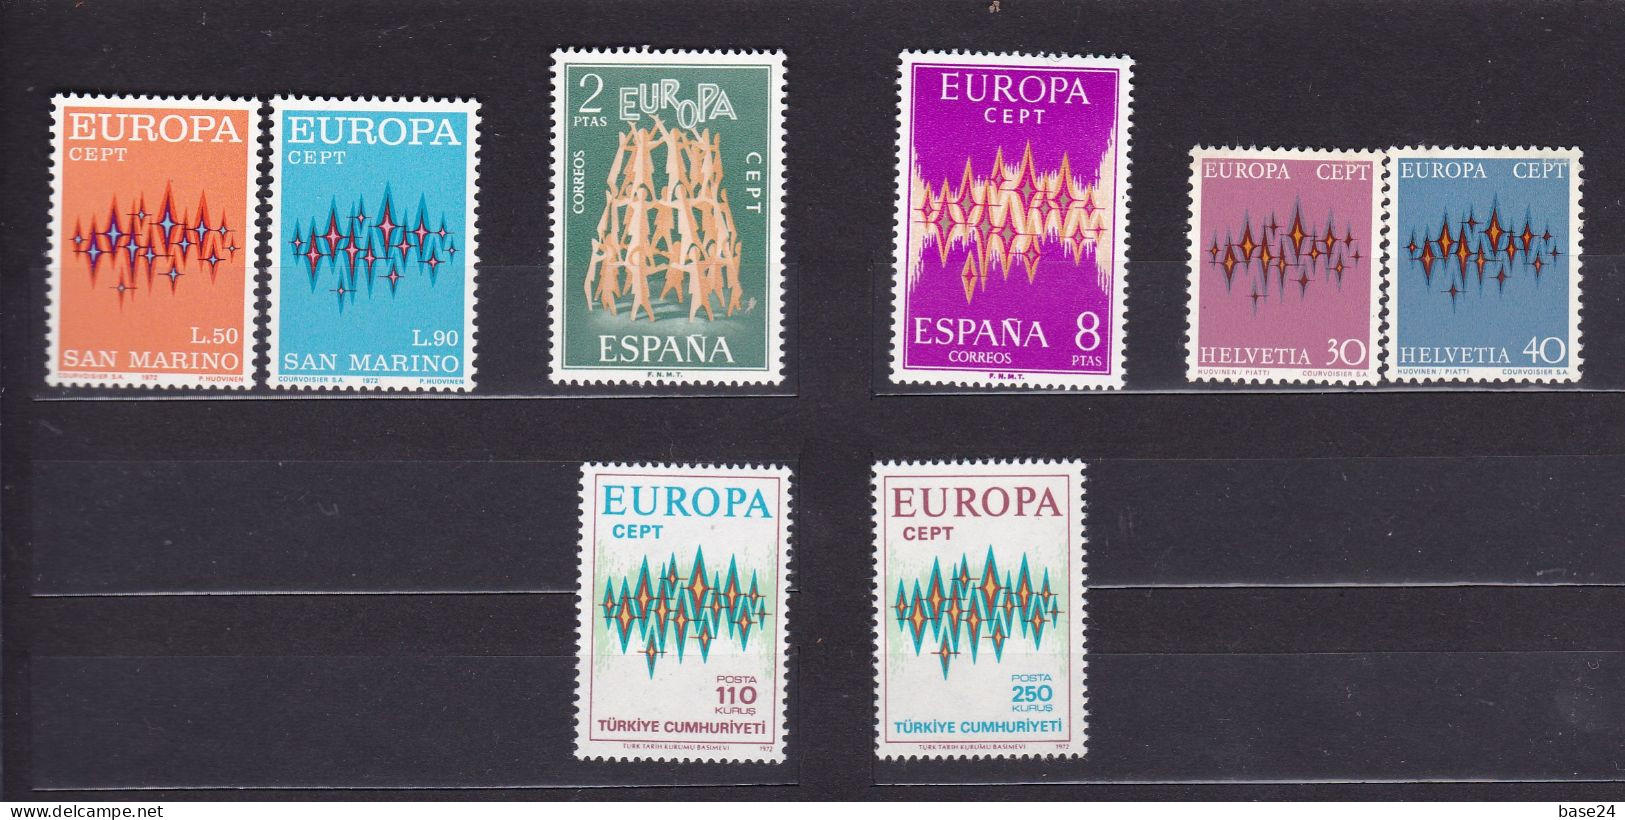 1972 EUROPA CEPT EUROPE ANNATA MNH** YEAR 22 Paesi, 46 Valori, Aurora Boreale Con 14 Stelle 14 Stars Northern Lights - 1972